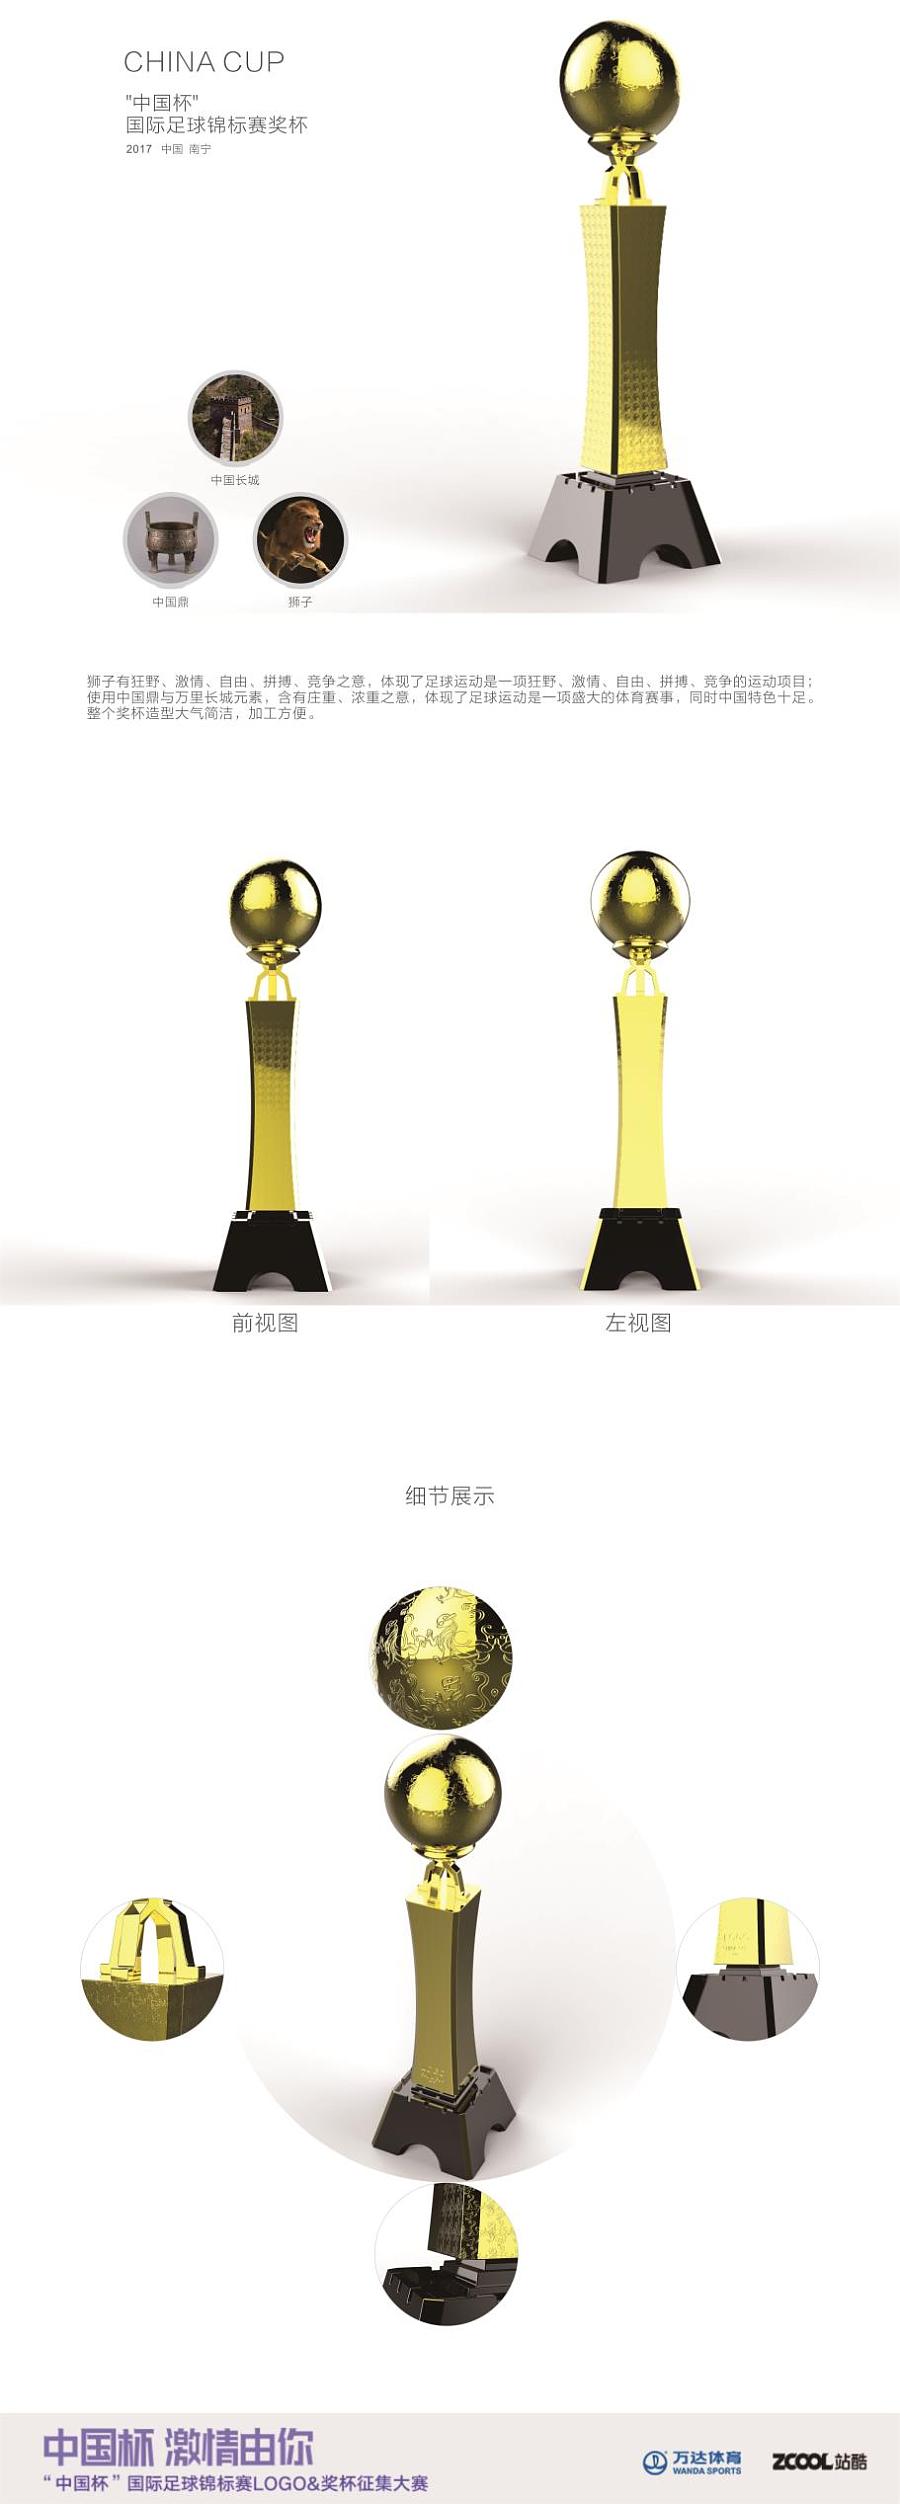 中国杯 国际足球锦标赛奖杯设计2|工业用品\/机